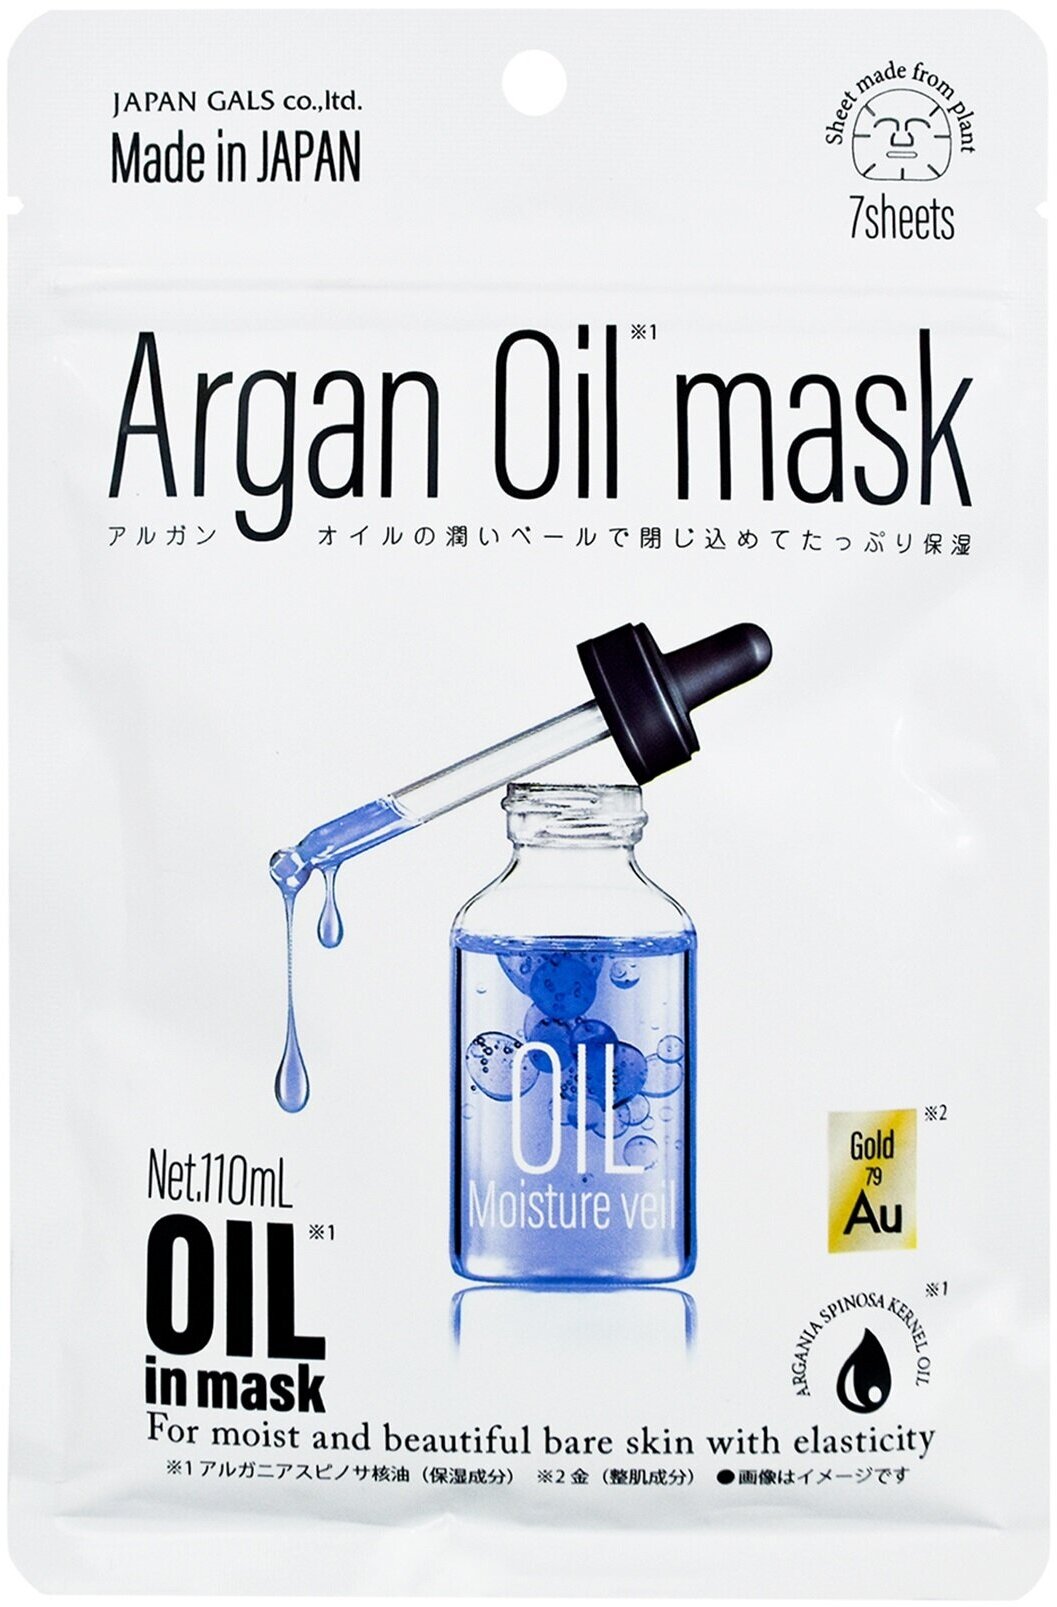 Набор из 7 масок для лица с аргановым маслом и золотом для упругости кожи Japan Gals Argan Oil Mask Week Pack /0,15 мл/гр.